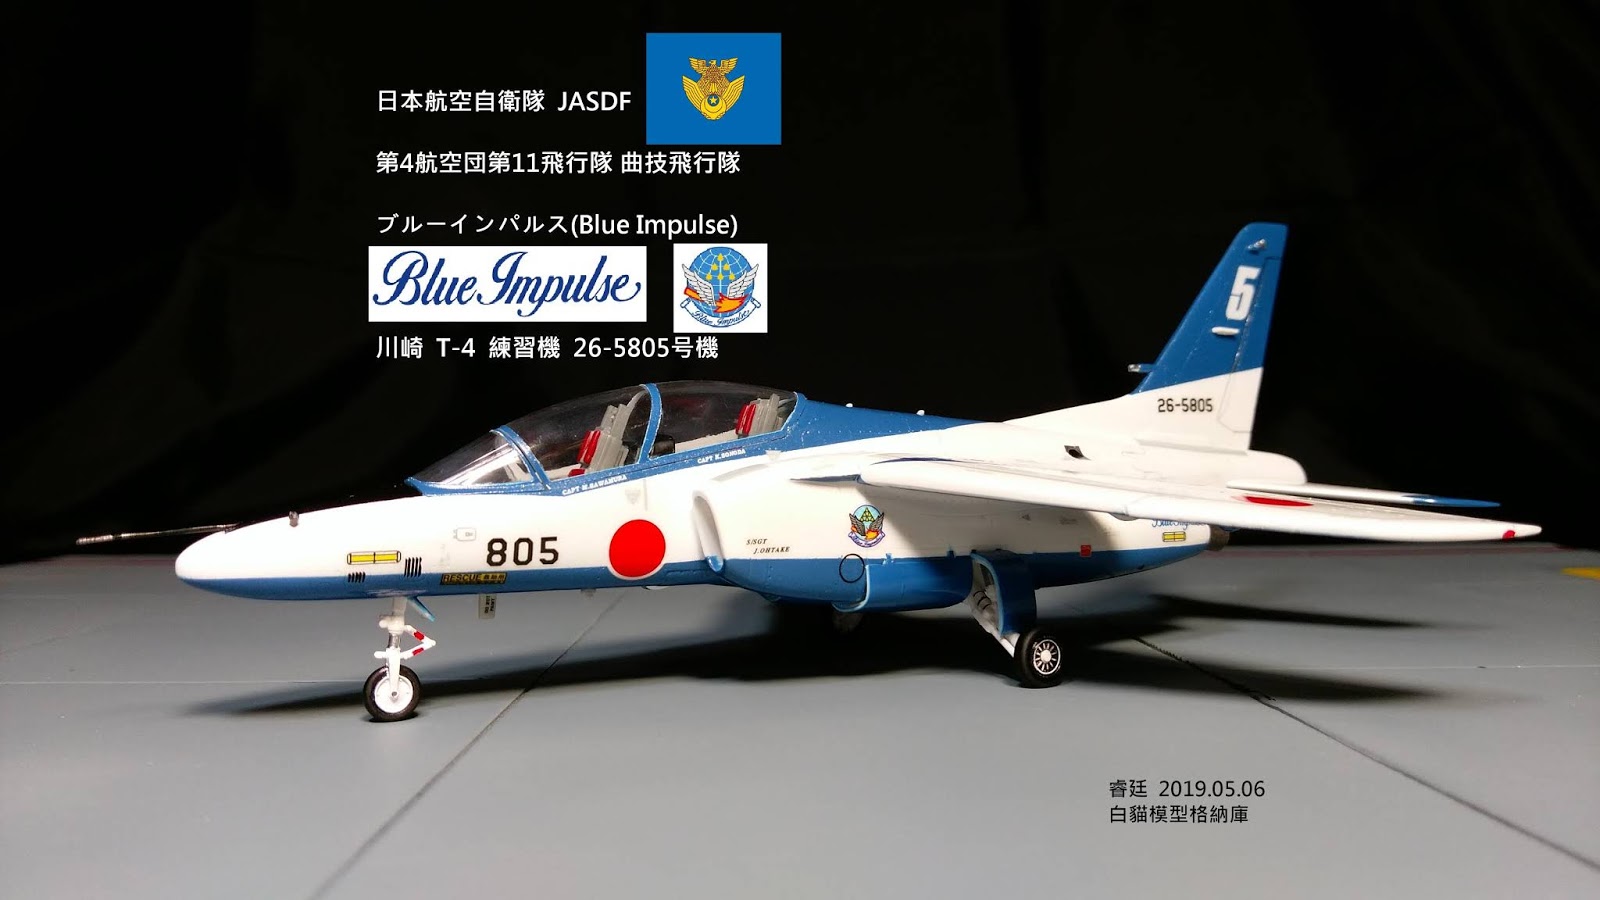 白貓模型格納庫 Kawasaki T 4 26 5805號機日本航空自衛隊jasdf Blue Impulse